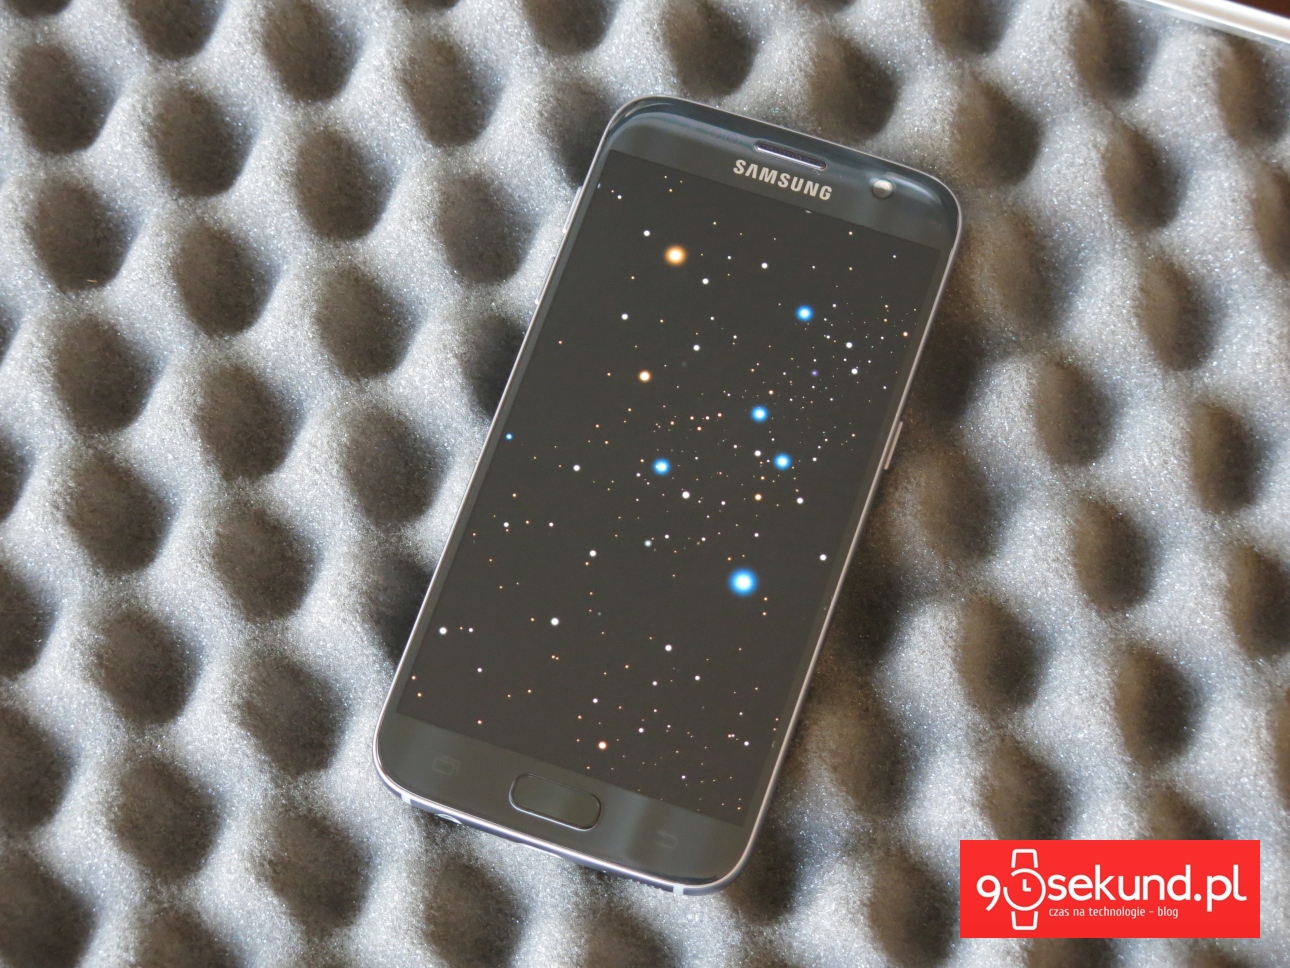 Samsung Galaxy S7 SM-G930 i ekran w trybie Display Always On - recenzja 90sekund.pl